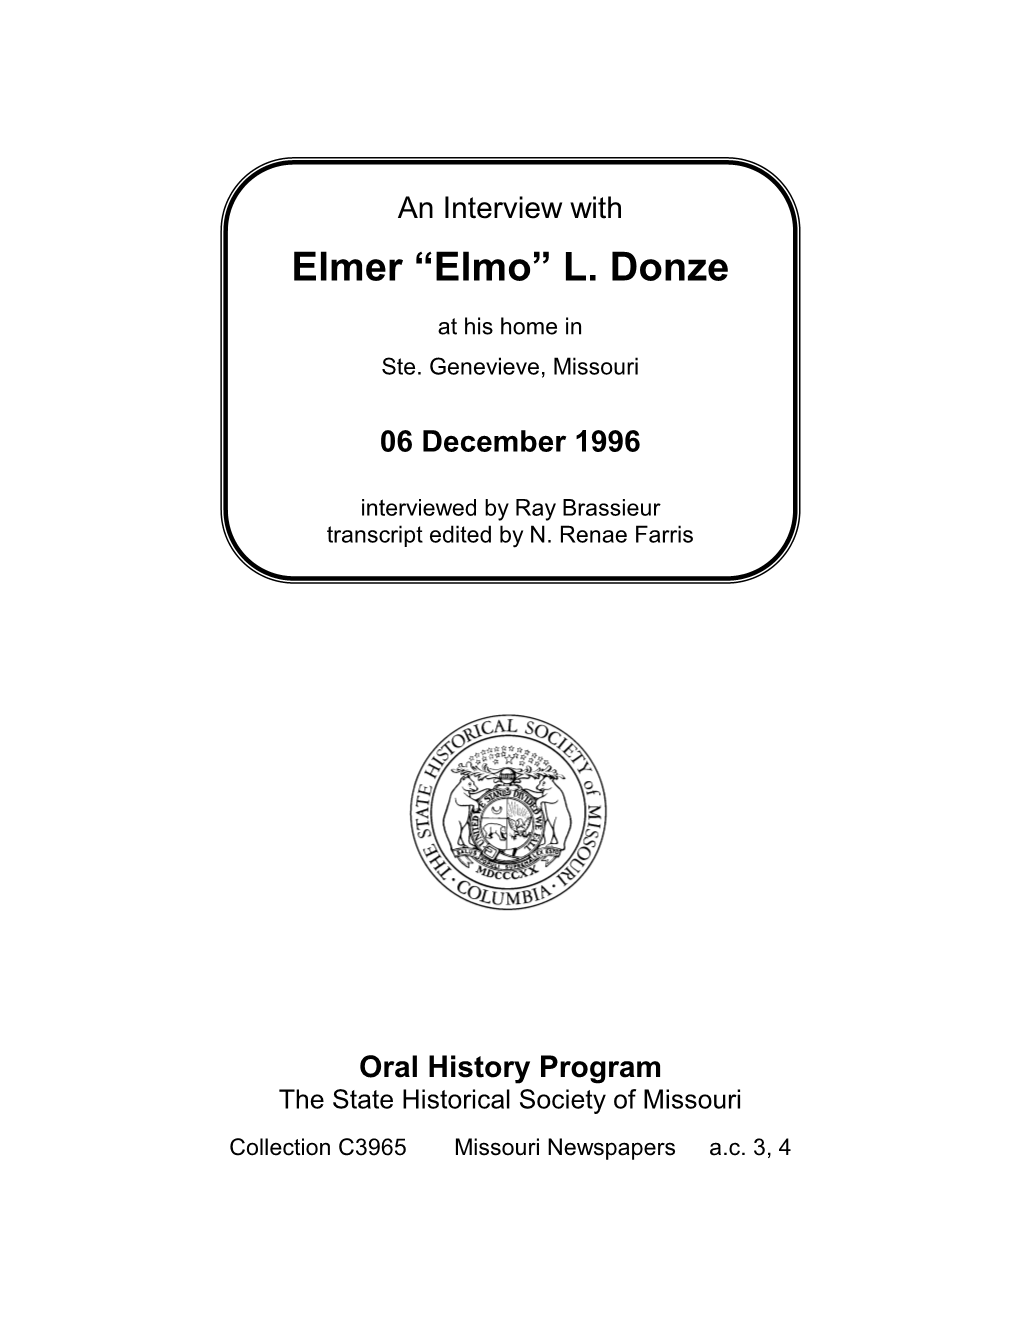 Elmer “Elmo” L. Donze